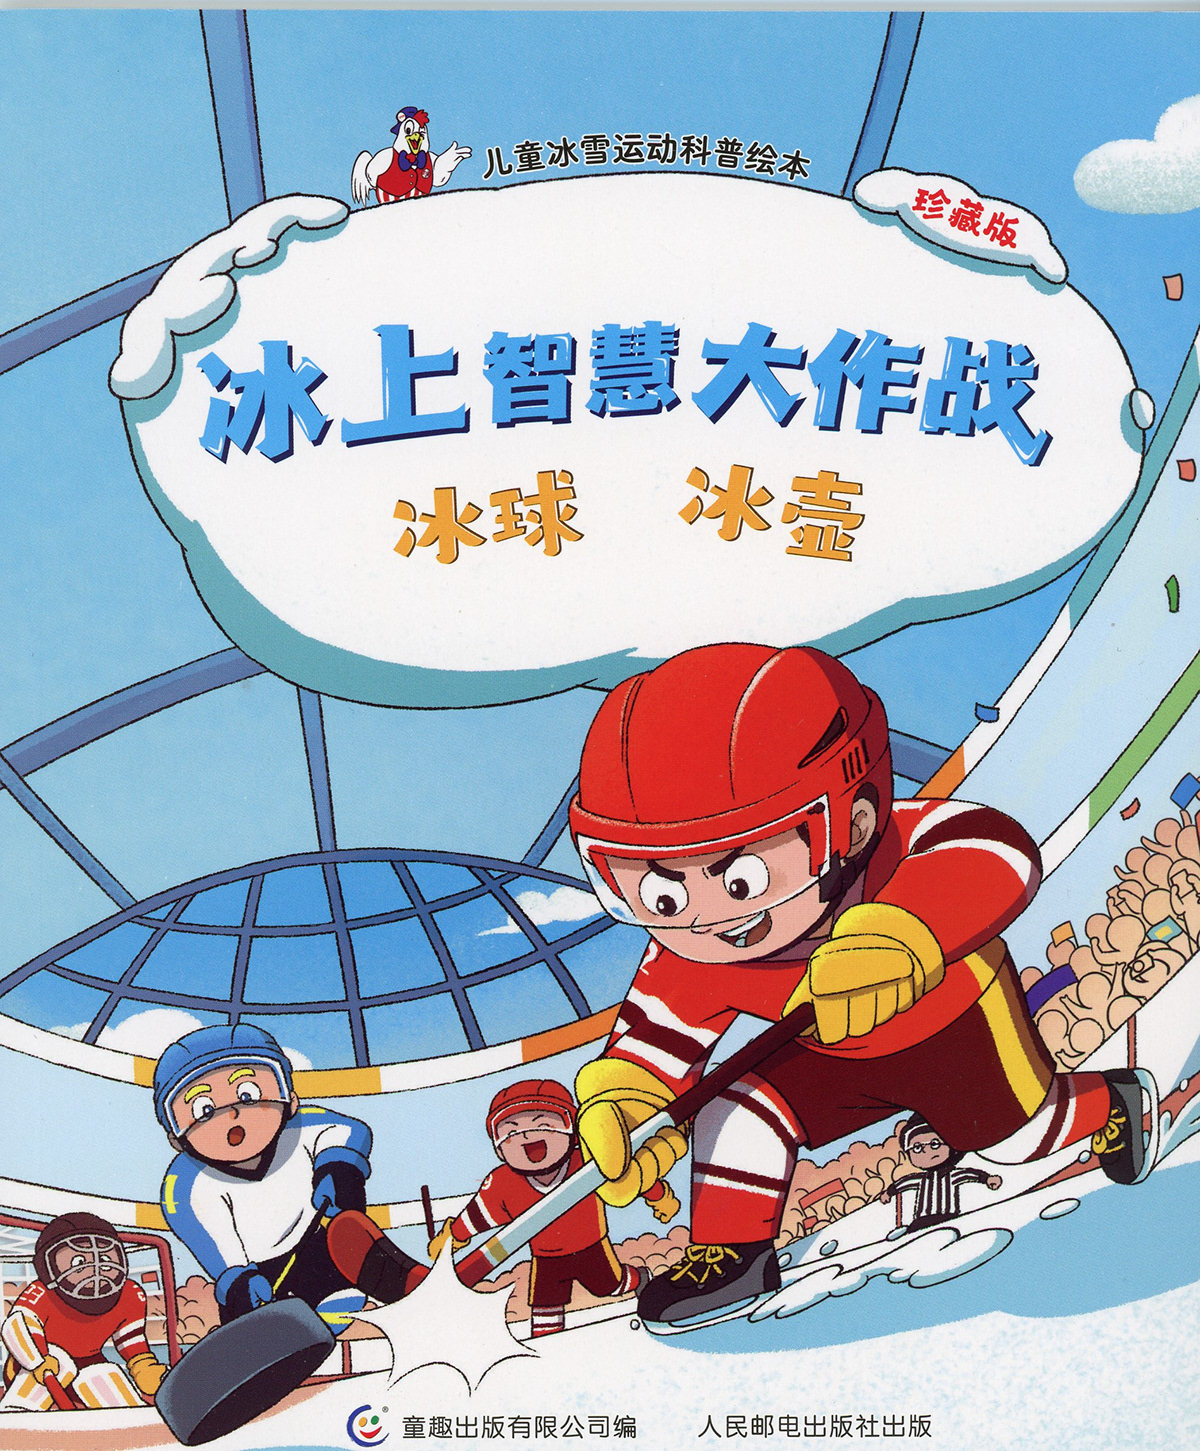 beijing2022 curling ice hockey Winter sports winterolympics